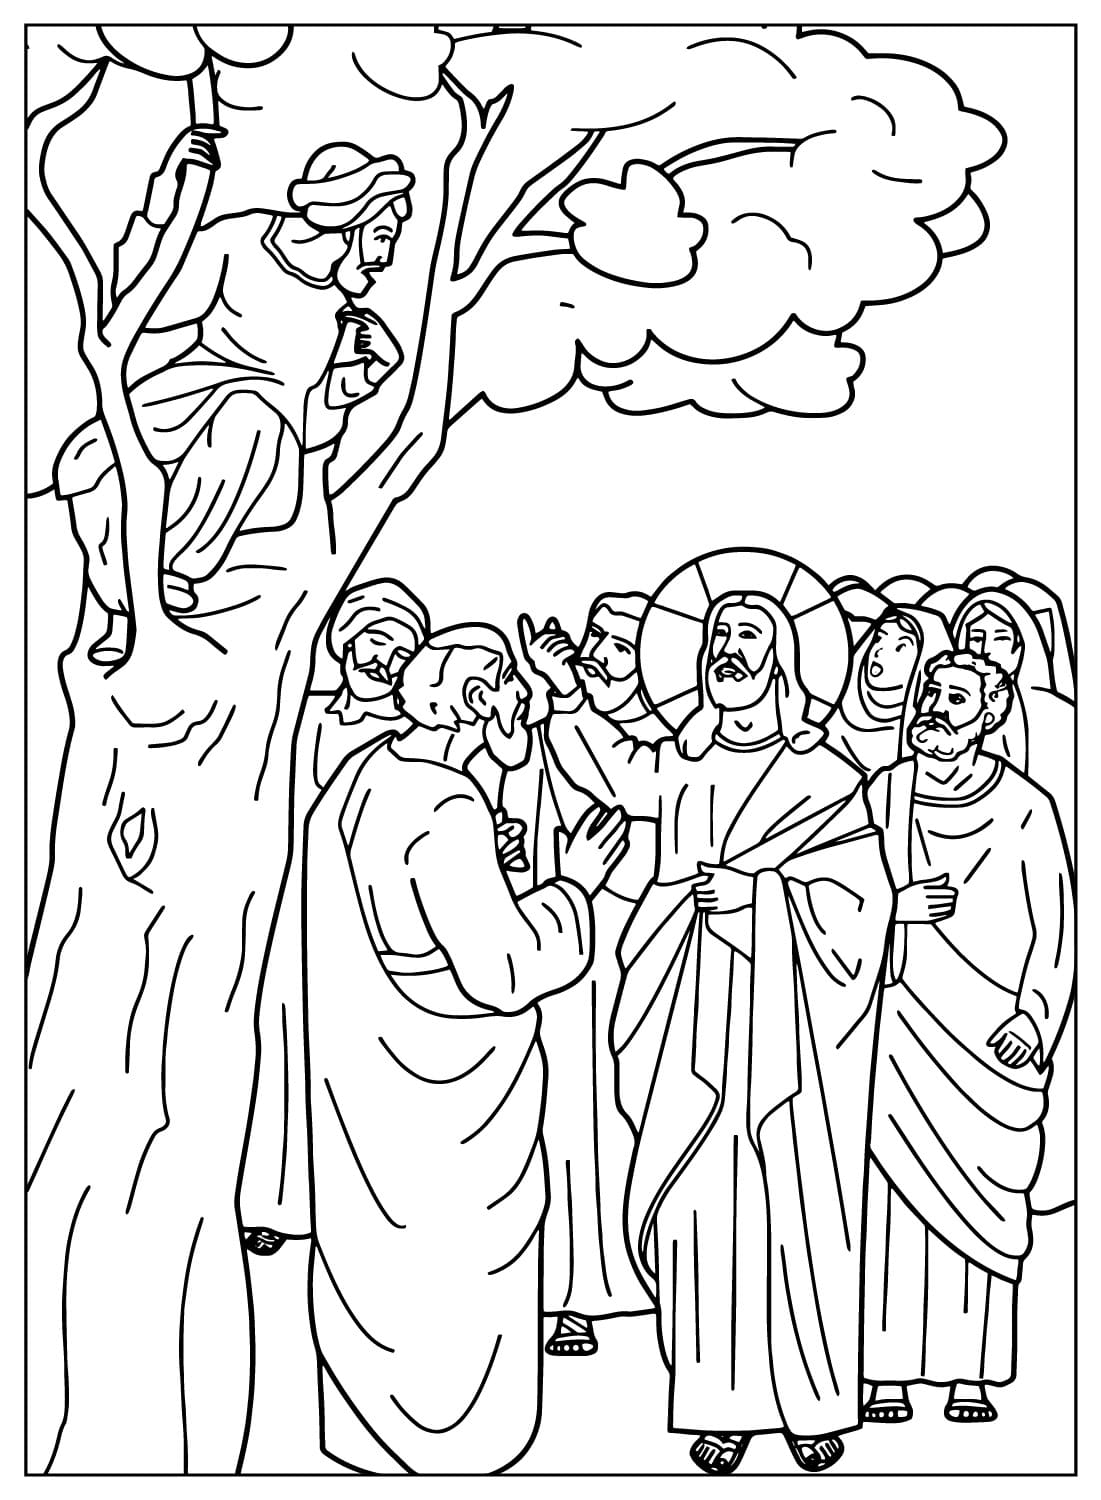 Zaches zit in een boom terwijl Jezus vanuit Jezus met hem praat